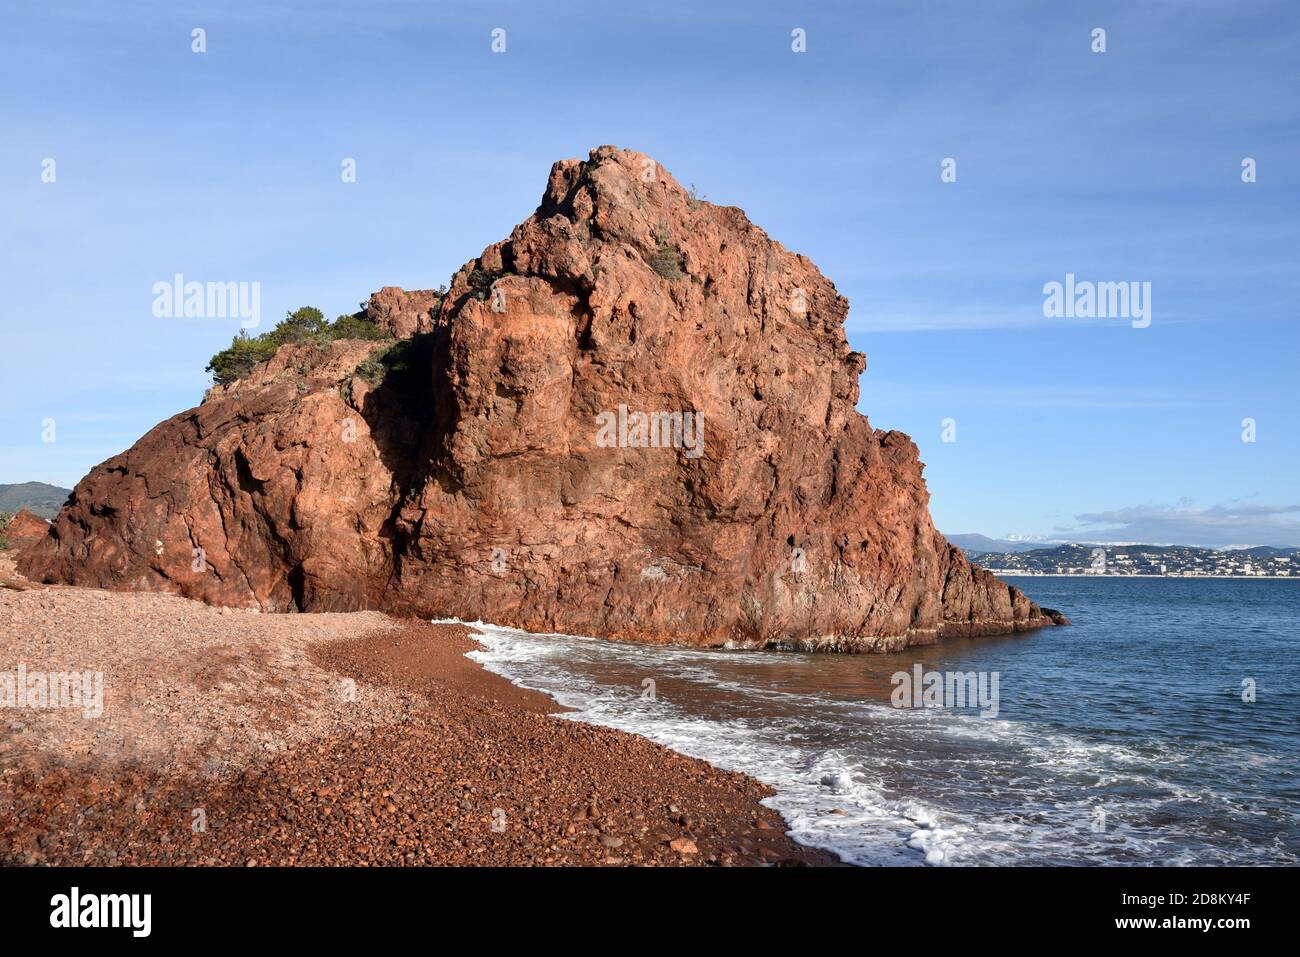 Francia, costa azzurra, Théoule sur Mer, il massiccio dell'Esterel è un massiccio vulcanico con scogliere di porfido rosso che si tuffano nel Mediterraneo. Foto Stock